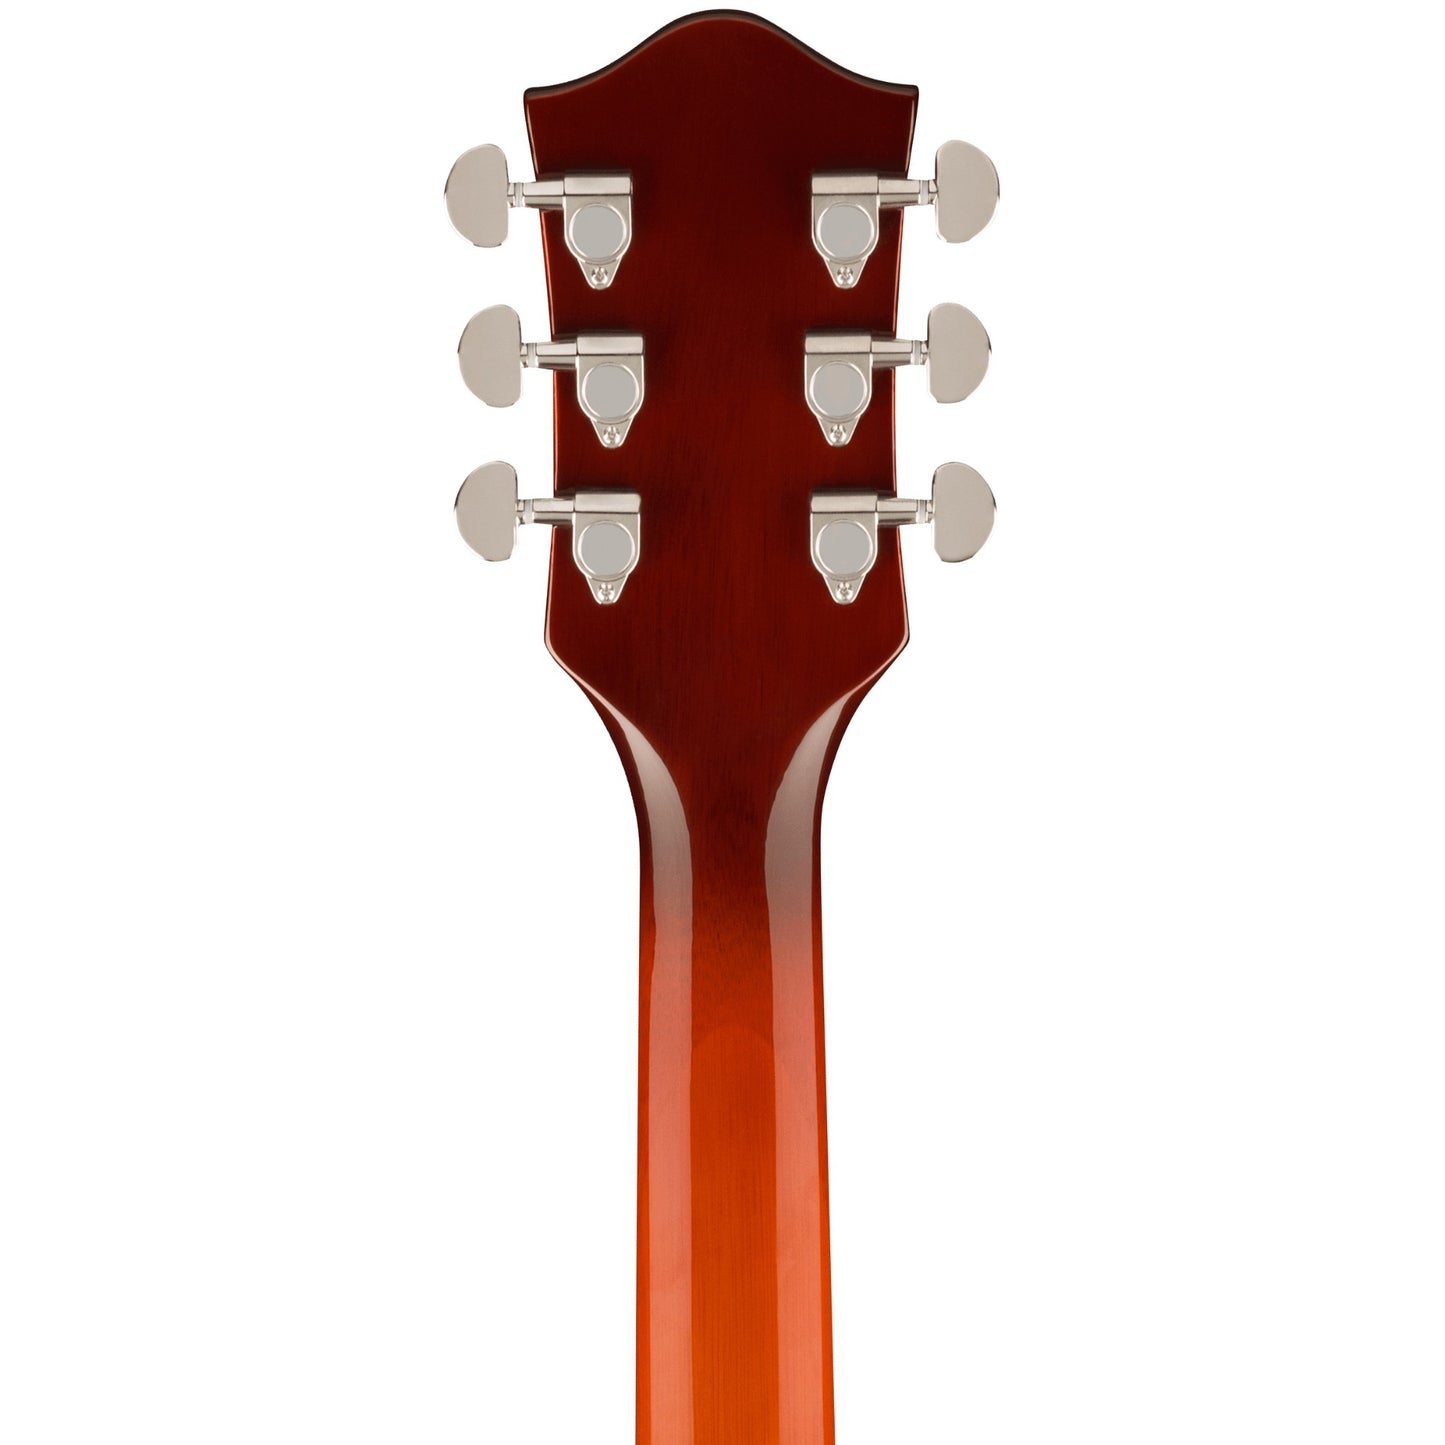 Gretsch G2420 Streamliner™ Hollow Body Electric Guitar, Fireburst